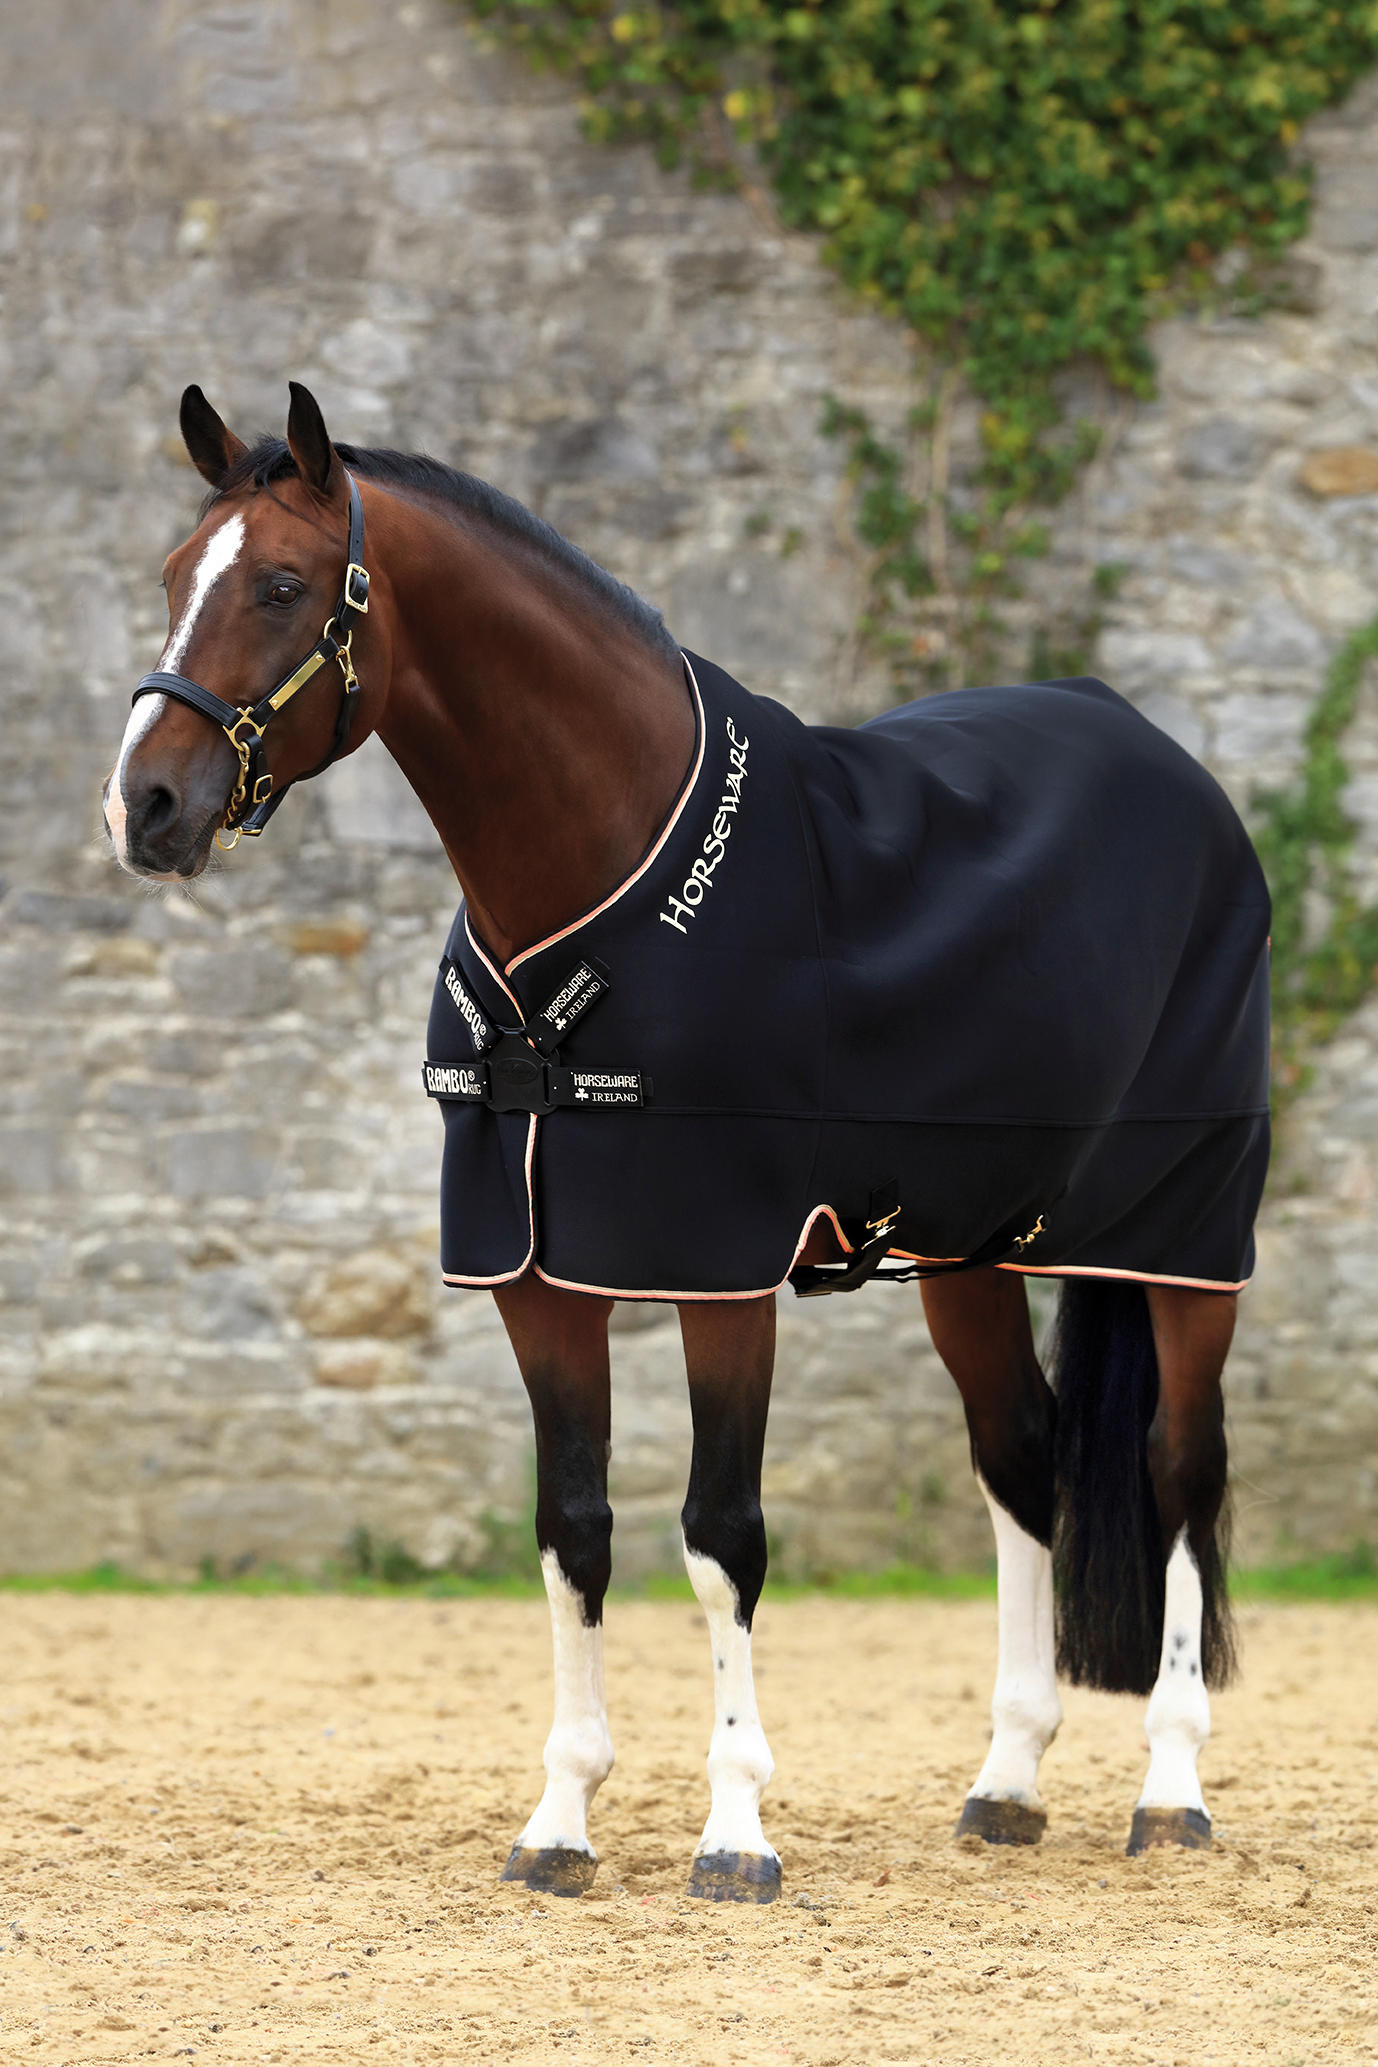 Pantaloni Impermeabili - Equestrian Roma - Vendita Articoli Equitazione Roma